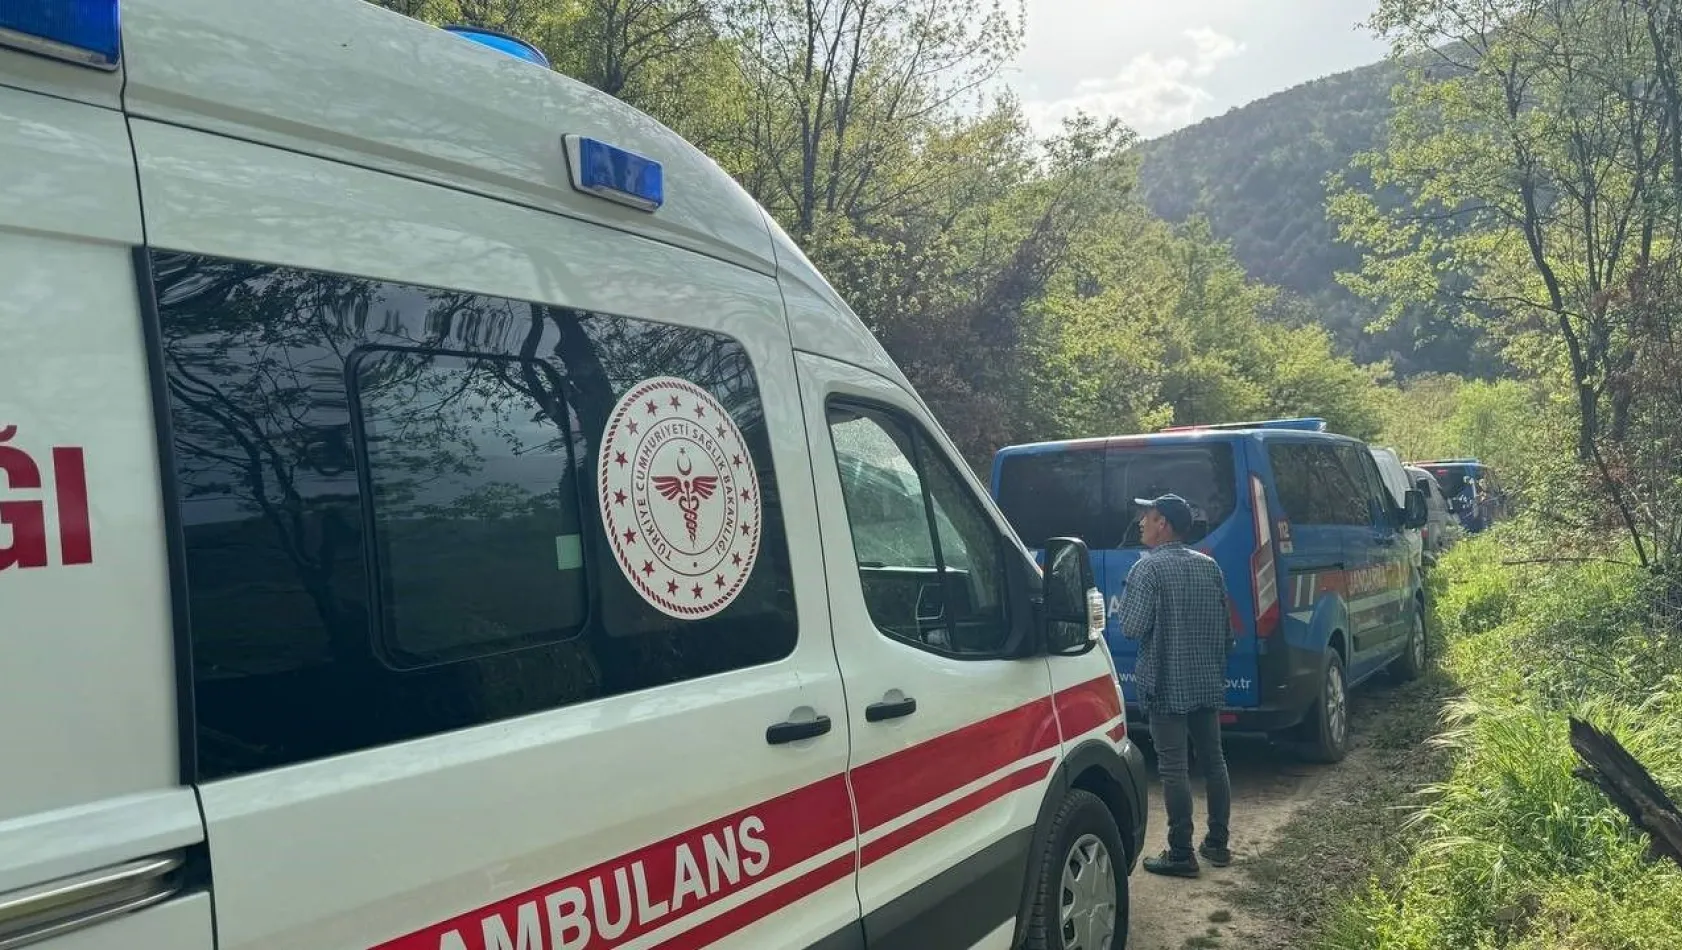 Bursa'da mağarada define faciası: 1 kişi öldü, mahsur kalanlar var